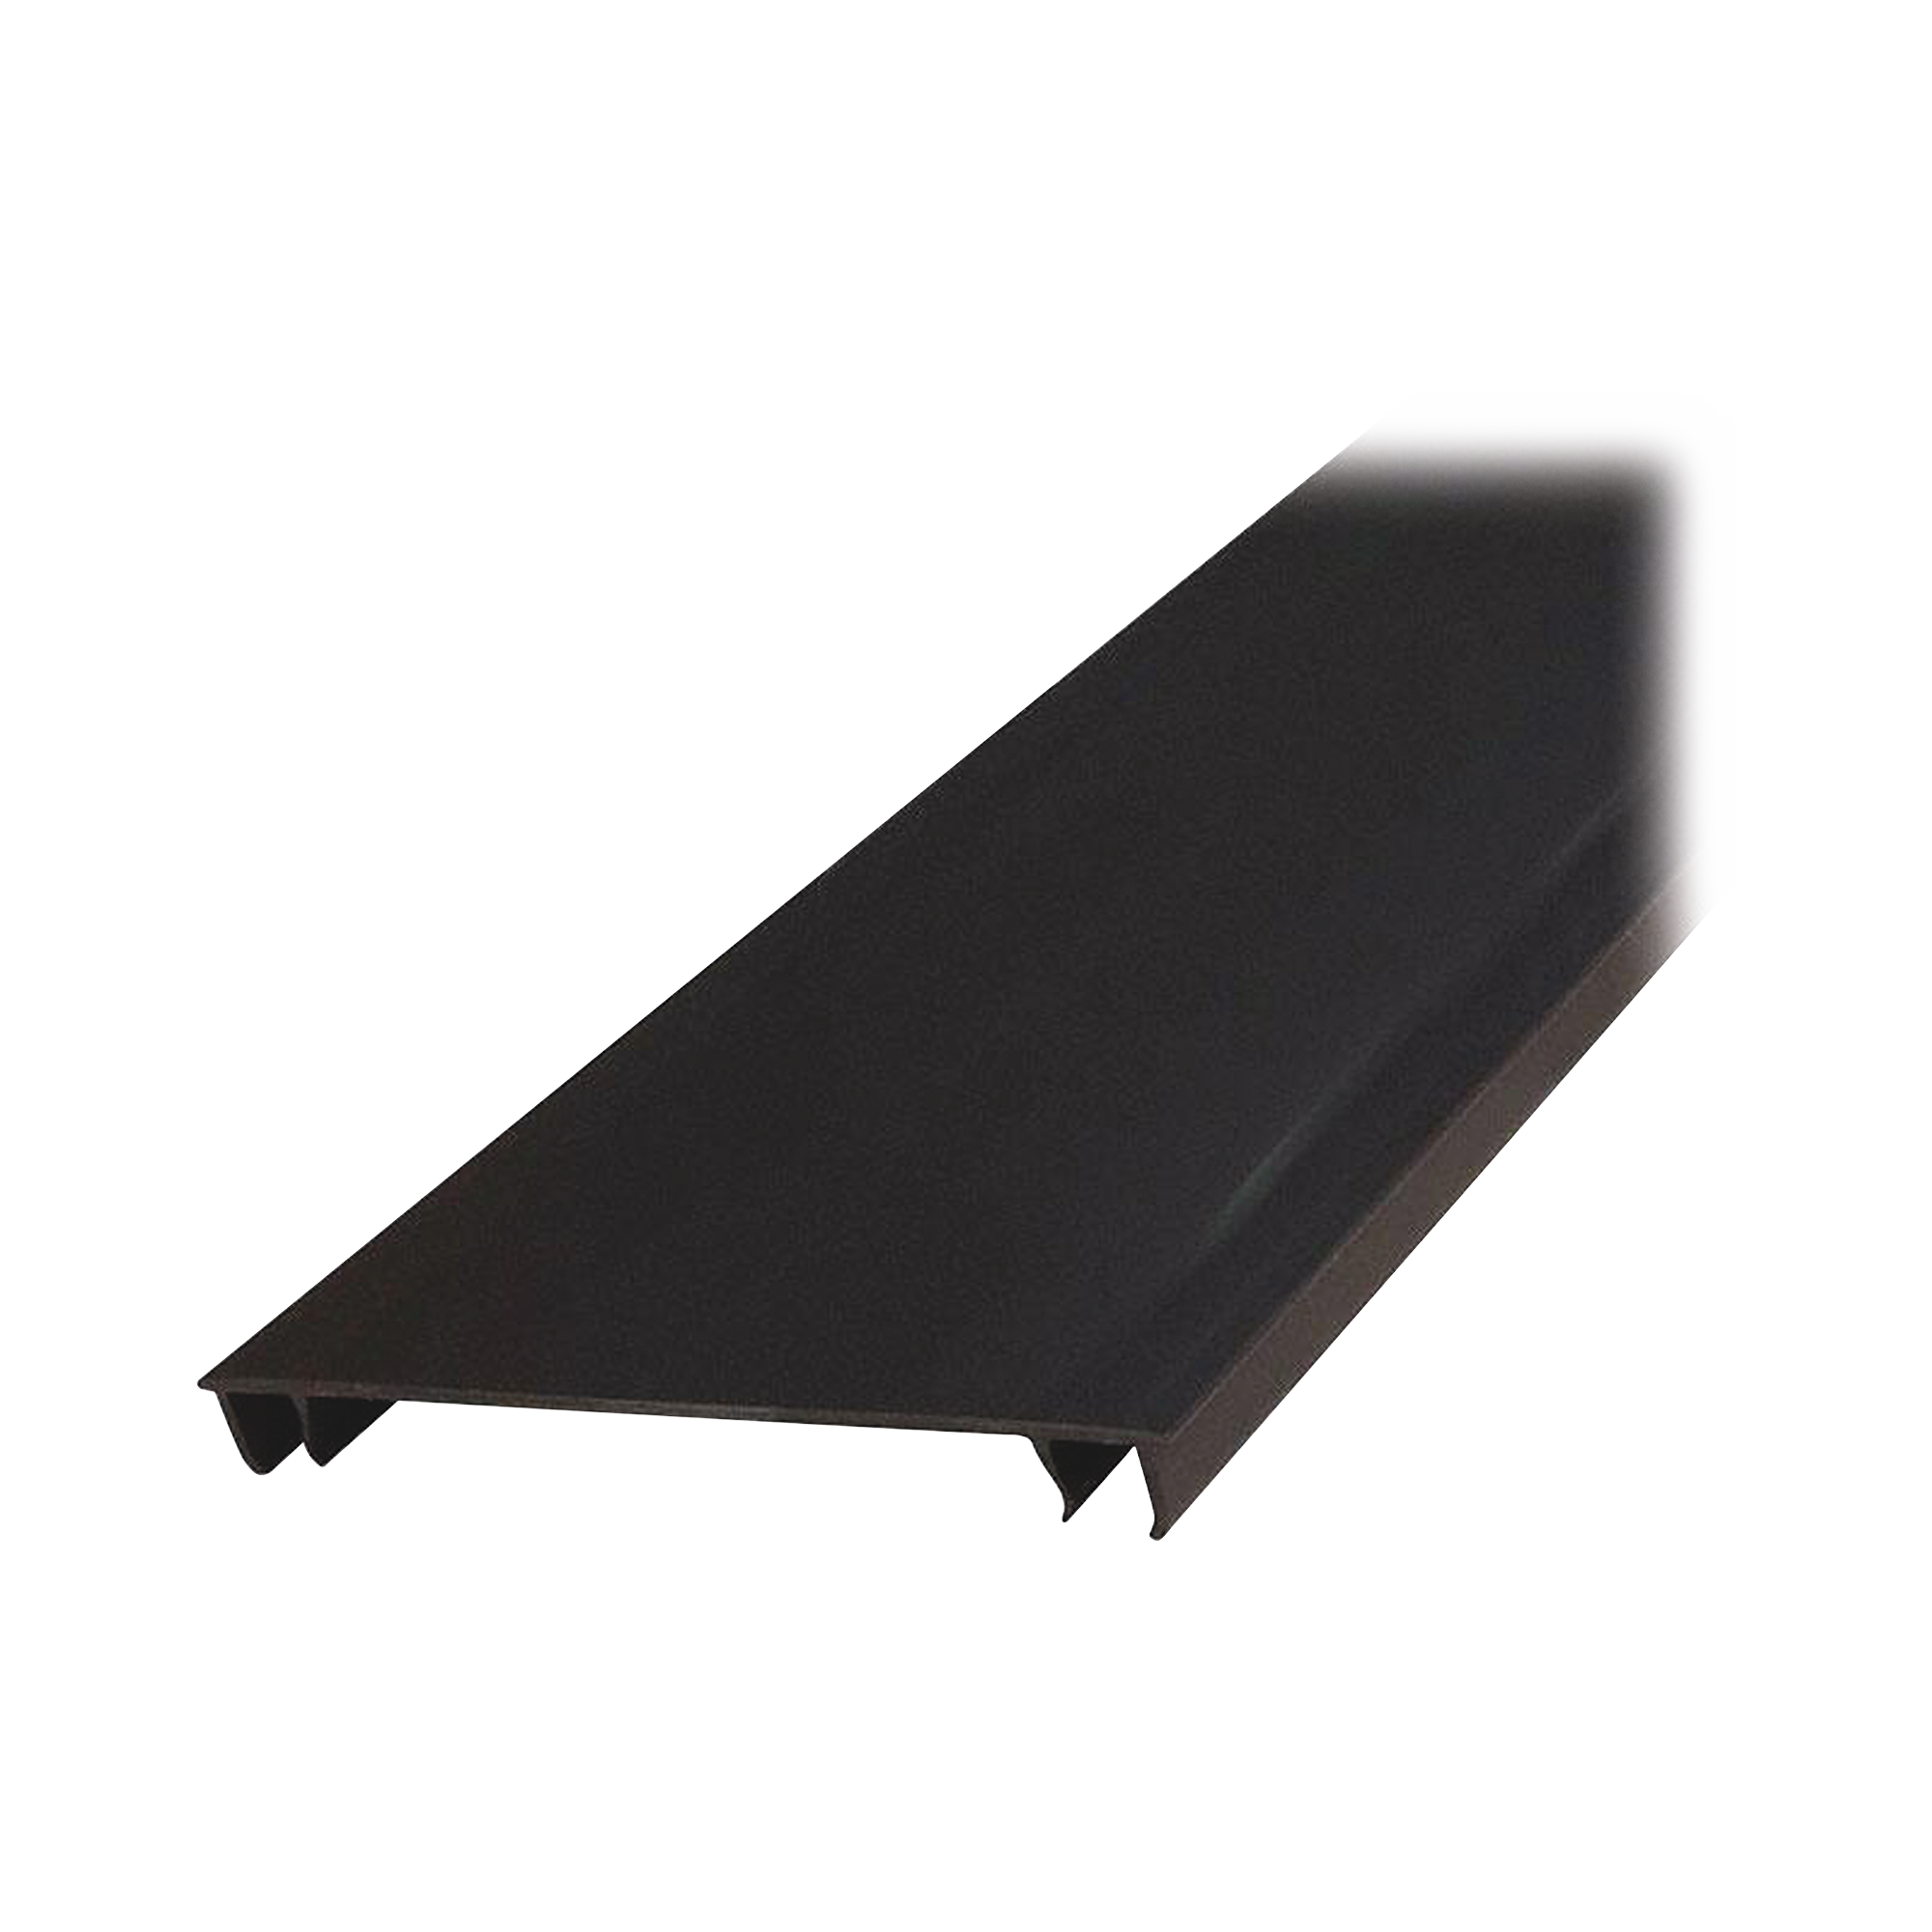 Tapa para Canaleta Ranurada Tipo H, de 55.1 mm de Ancho, 1828.8 mm de Largo, Color Negro